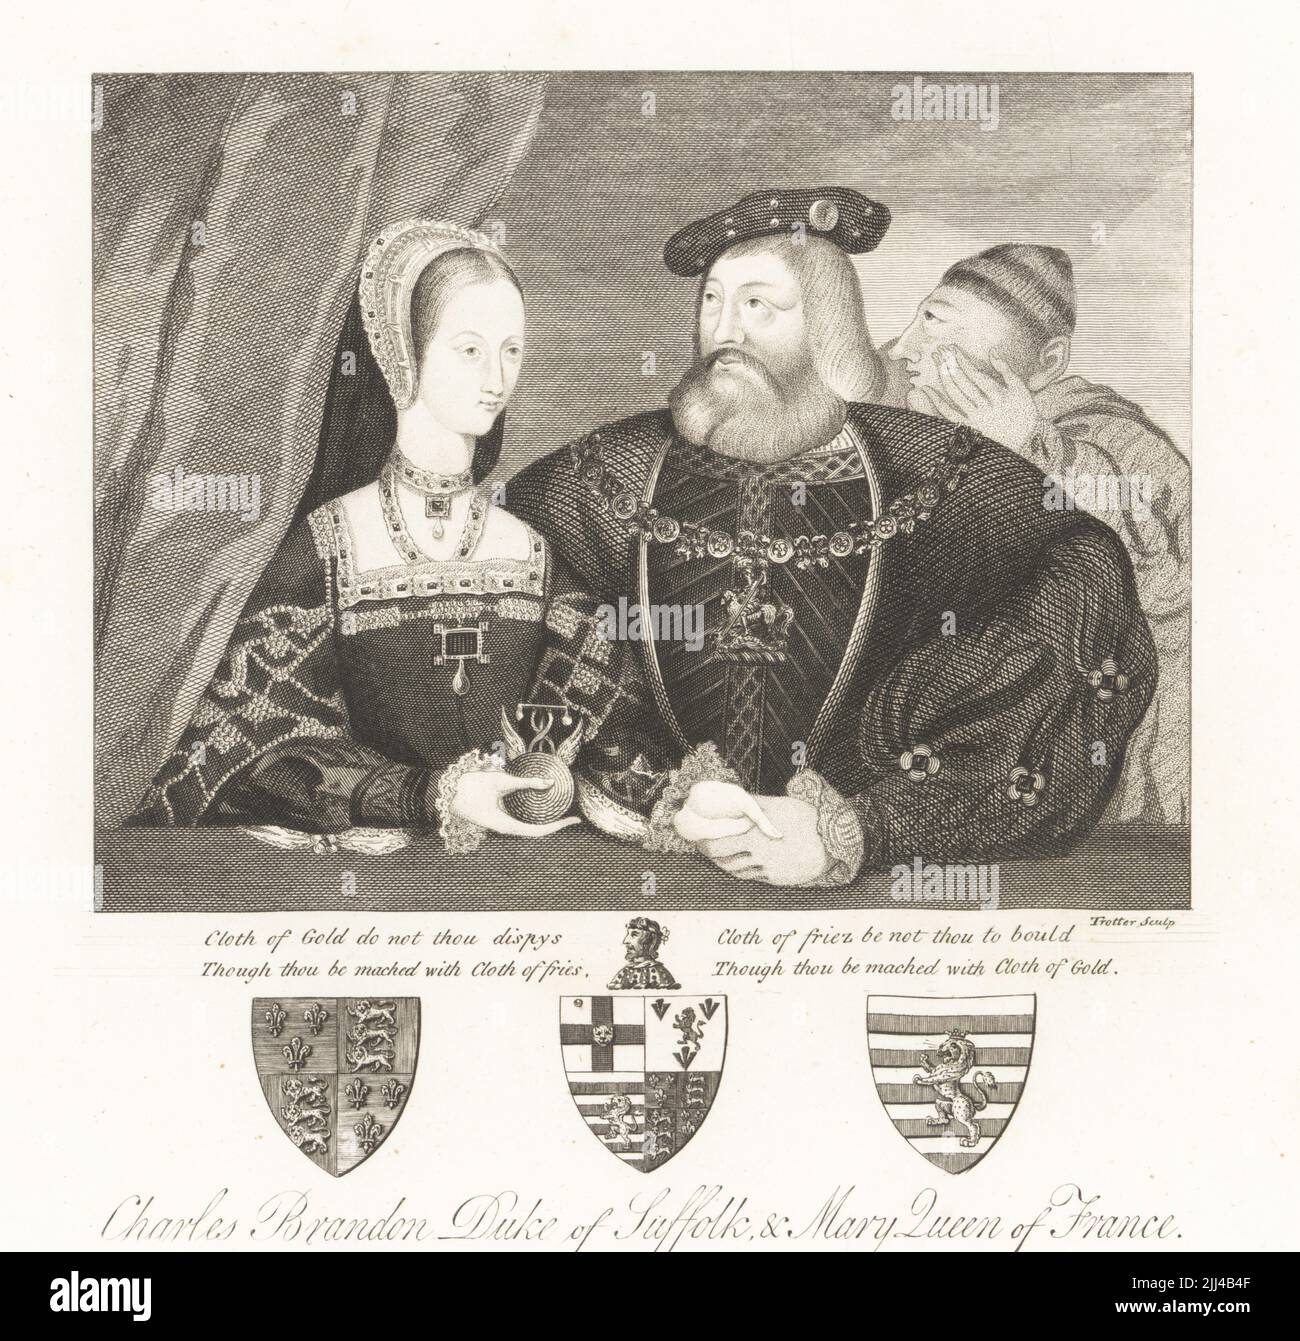 Charles Brandon, 1. Herzog von Suffolk, 1484-1546, und Mary Tudor, Königin von Frankreich, 1496-1533. Er in Hut, pelztem Mantel, Kragen des Kleides, sie in Kapuze, bekleidet Kleid, hält ein Emblem. Wappen darunter. Kopie des Hochzeitsportraits von 1515 mit zusätzlicher Figur, die Brandon ins Ohr flüstert, Tuch aus Gold ist nicht dein Streitstück, obwohl du mit einem Tuch aus Pommes gemacht wirst, Tuch aus Friese sei nicht zu bould, obwohl du mit einem Tuch aus Gold gemacht wirst. Aus dem Original im Besitz von Samuel Egerton Brydges. Kupferstich von Thomas Trotter nach einem Gemälde von Jan Gossaert aus Samu Stockfoto